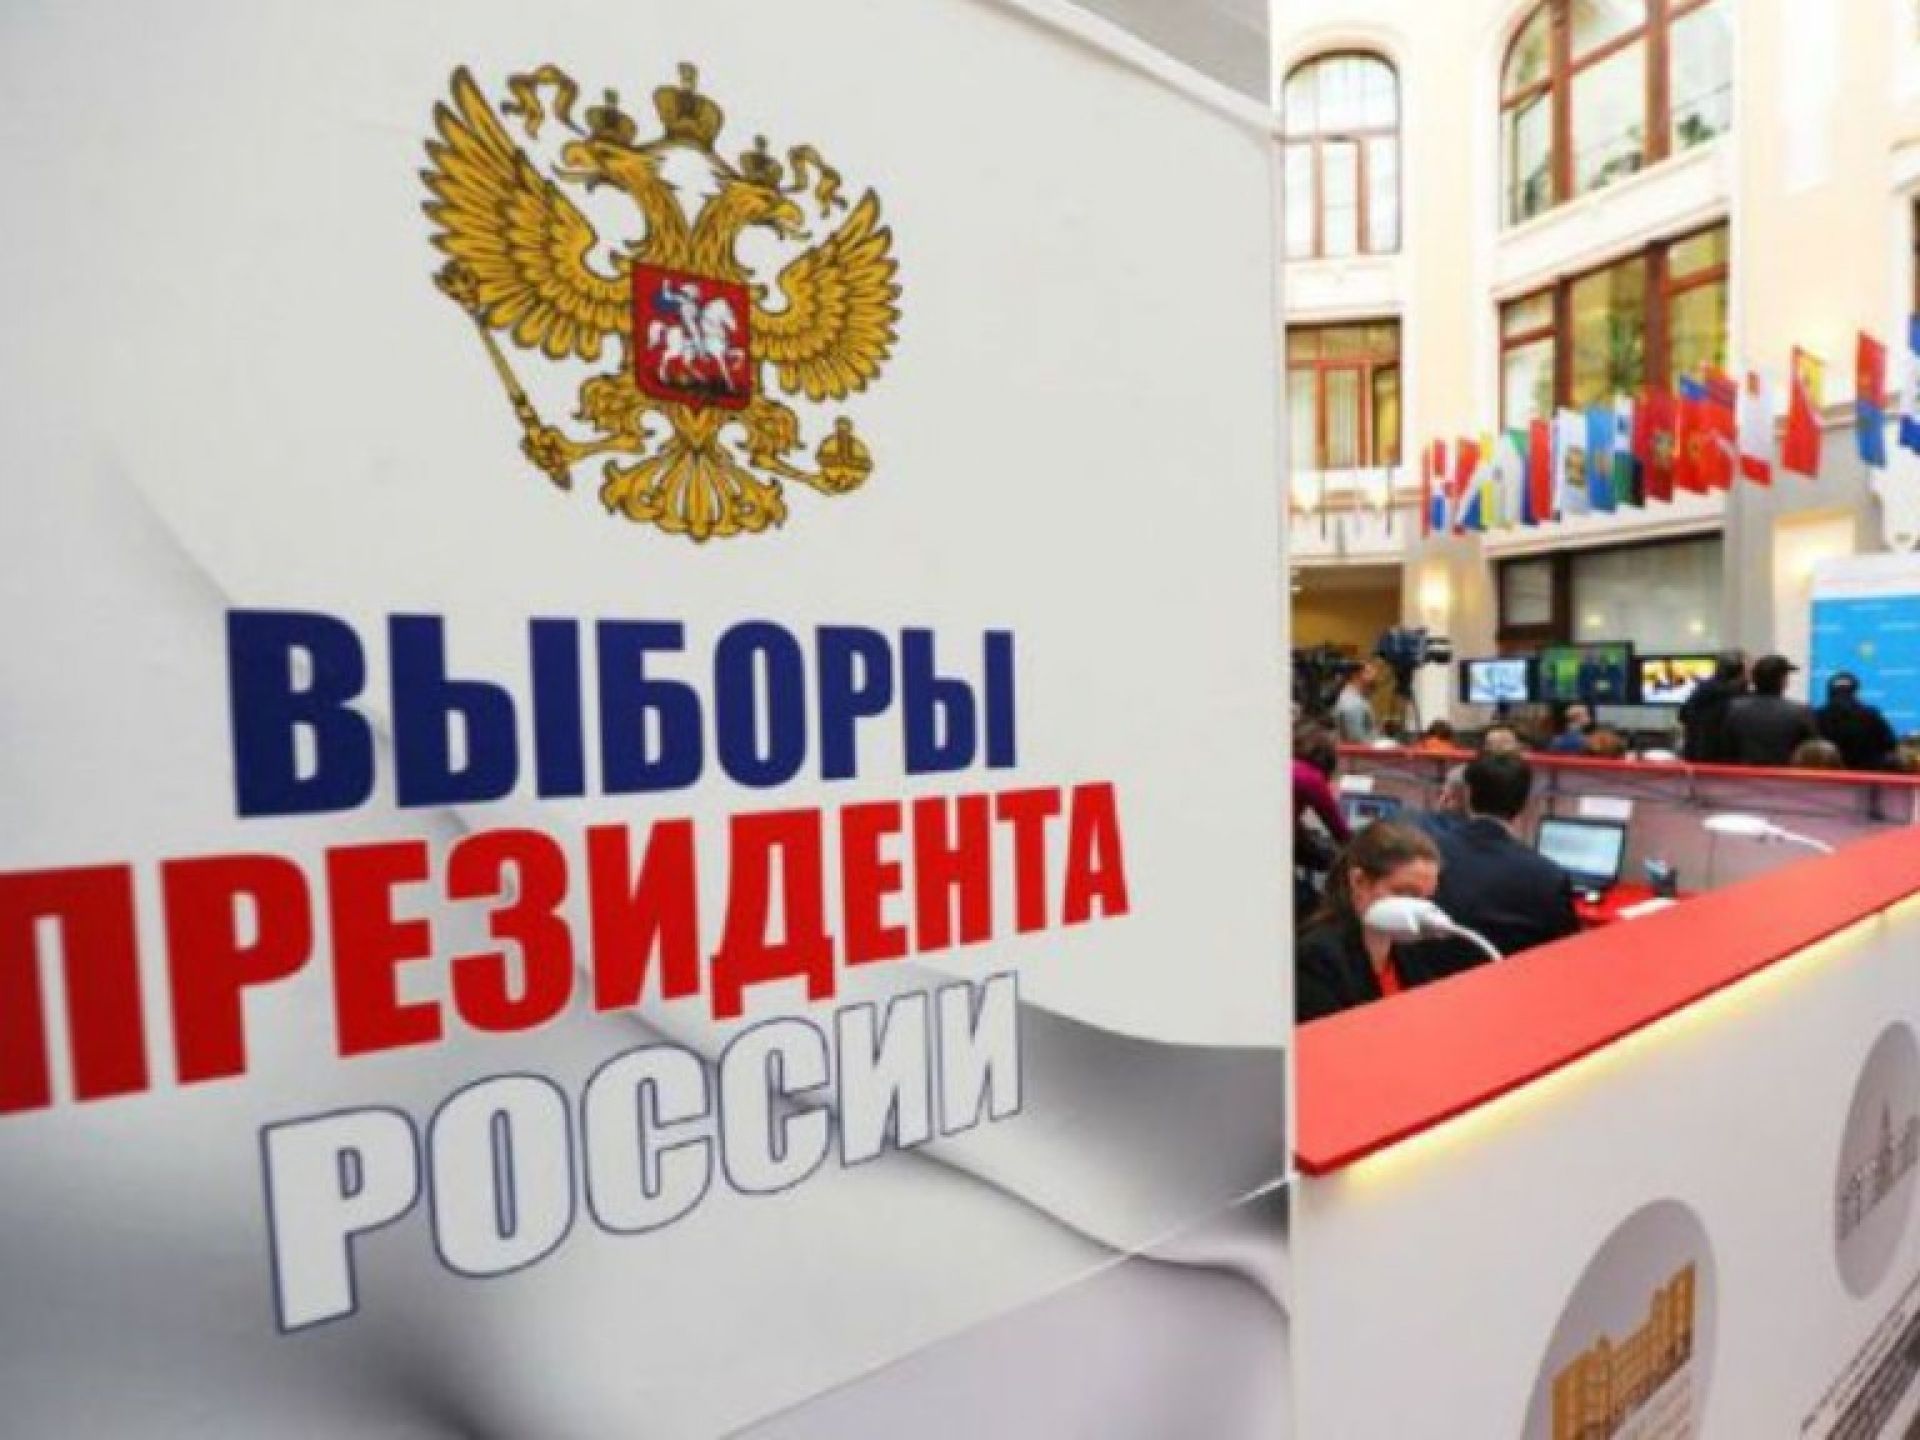 Выборы президента российской федерации картинки